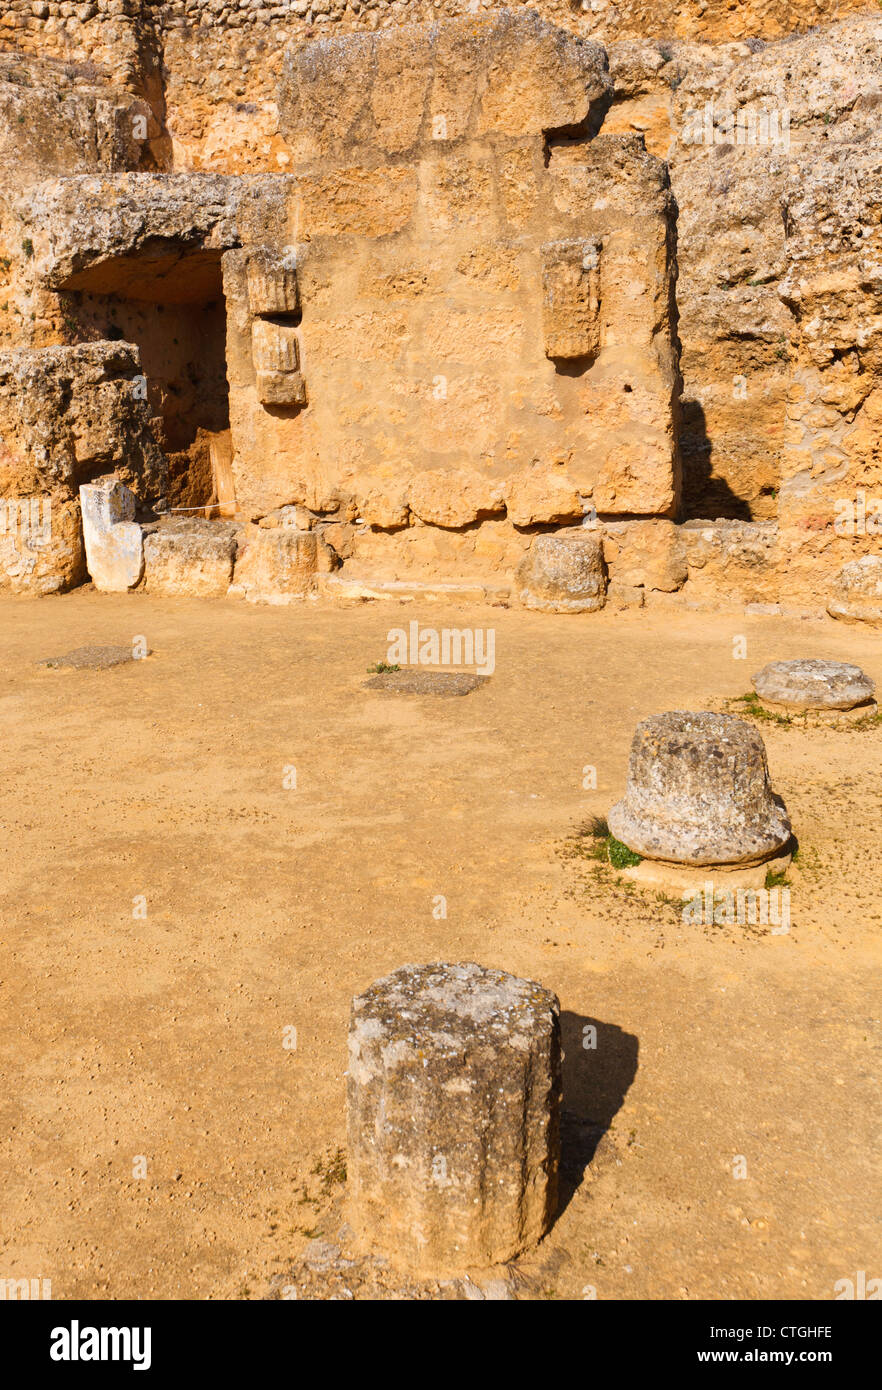 El complejo arqueológico, Carmona, provincia de Sevilla, España. La Tumba de Servilia, la tumba de Servilia. Foto de stock